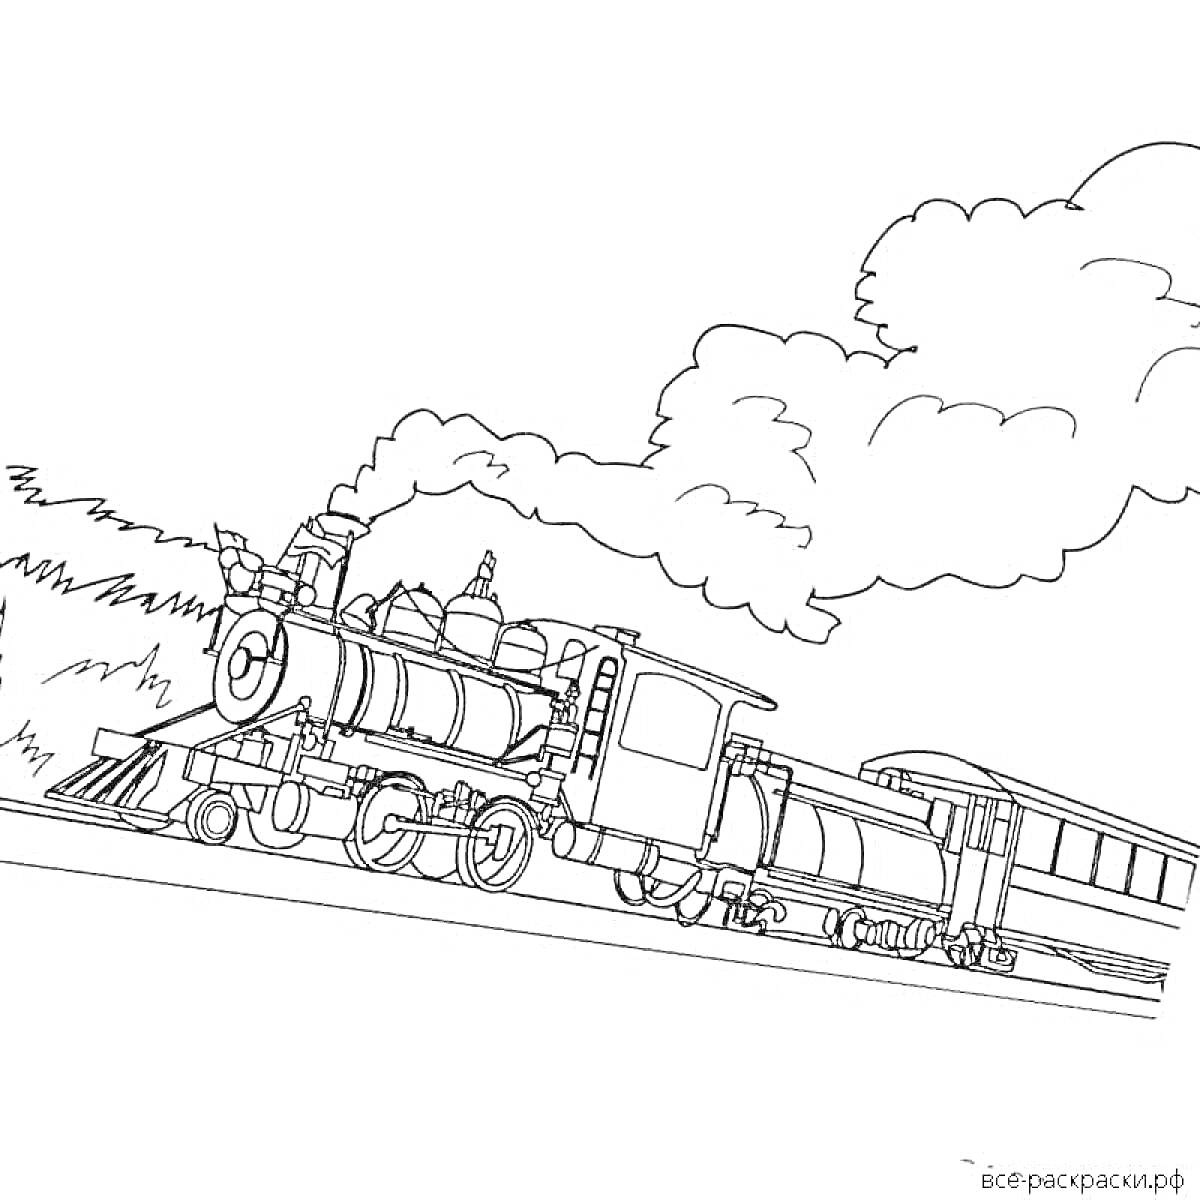 На раскраске изображено: Военный поезд, Паровоз, Вагоны, Рельсы, Железная дорога, Дым, Деревья, Облака, Транспорт